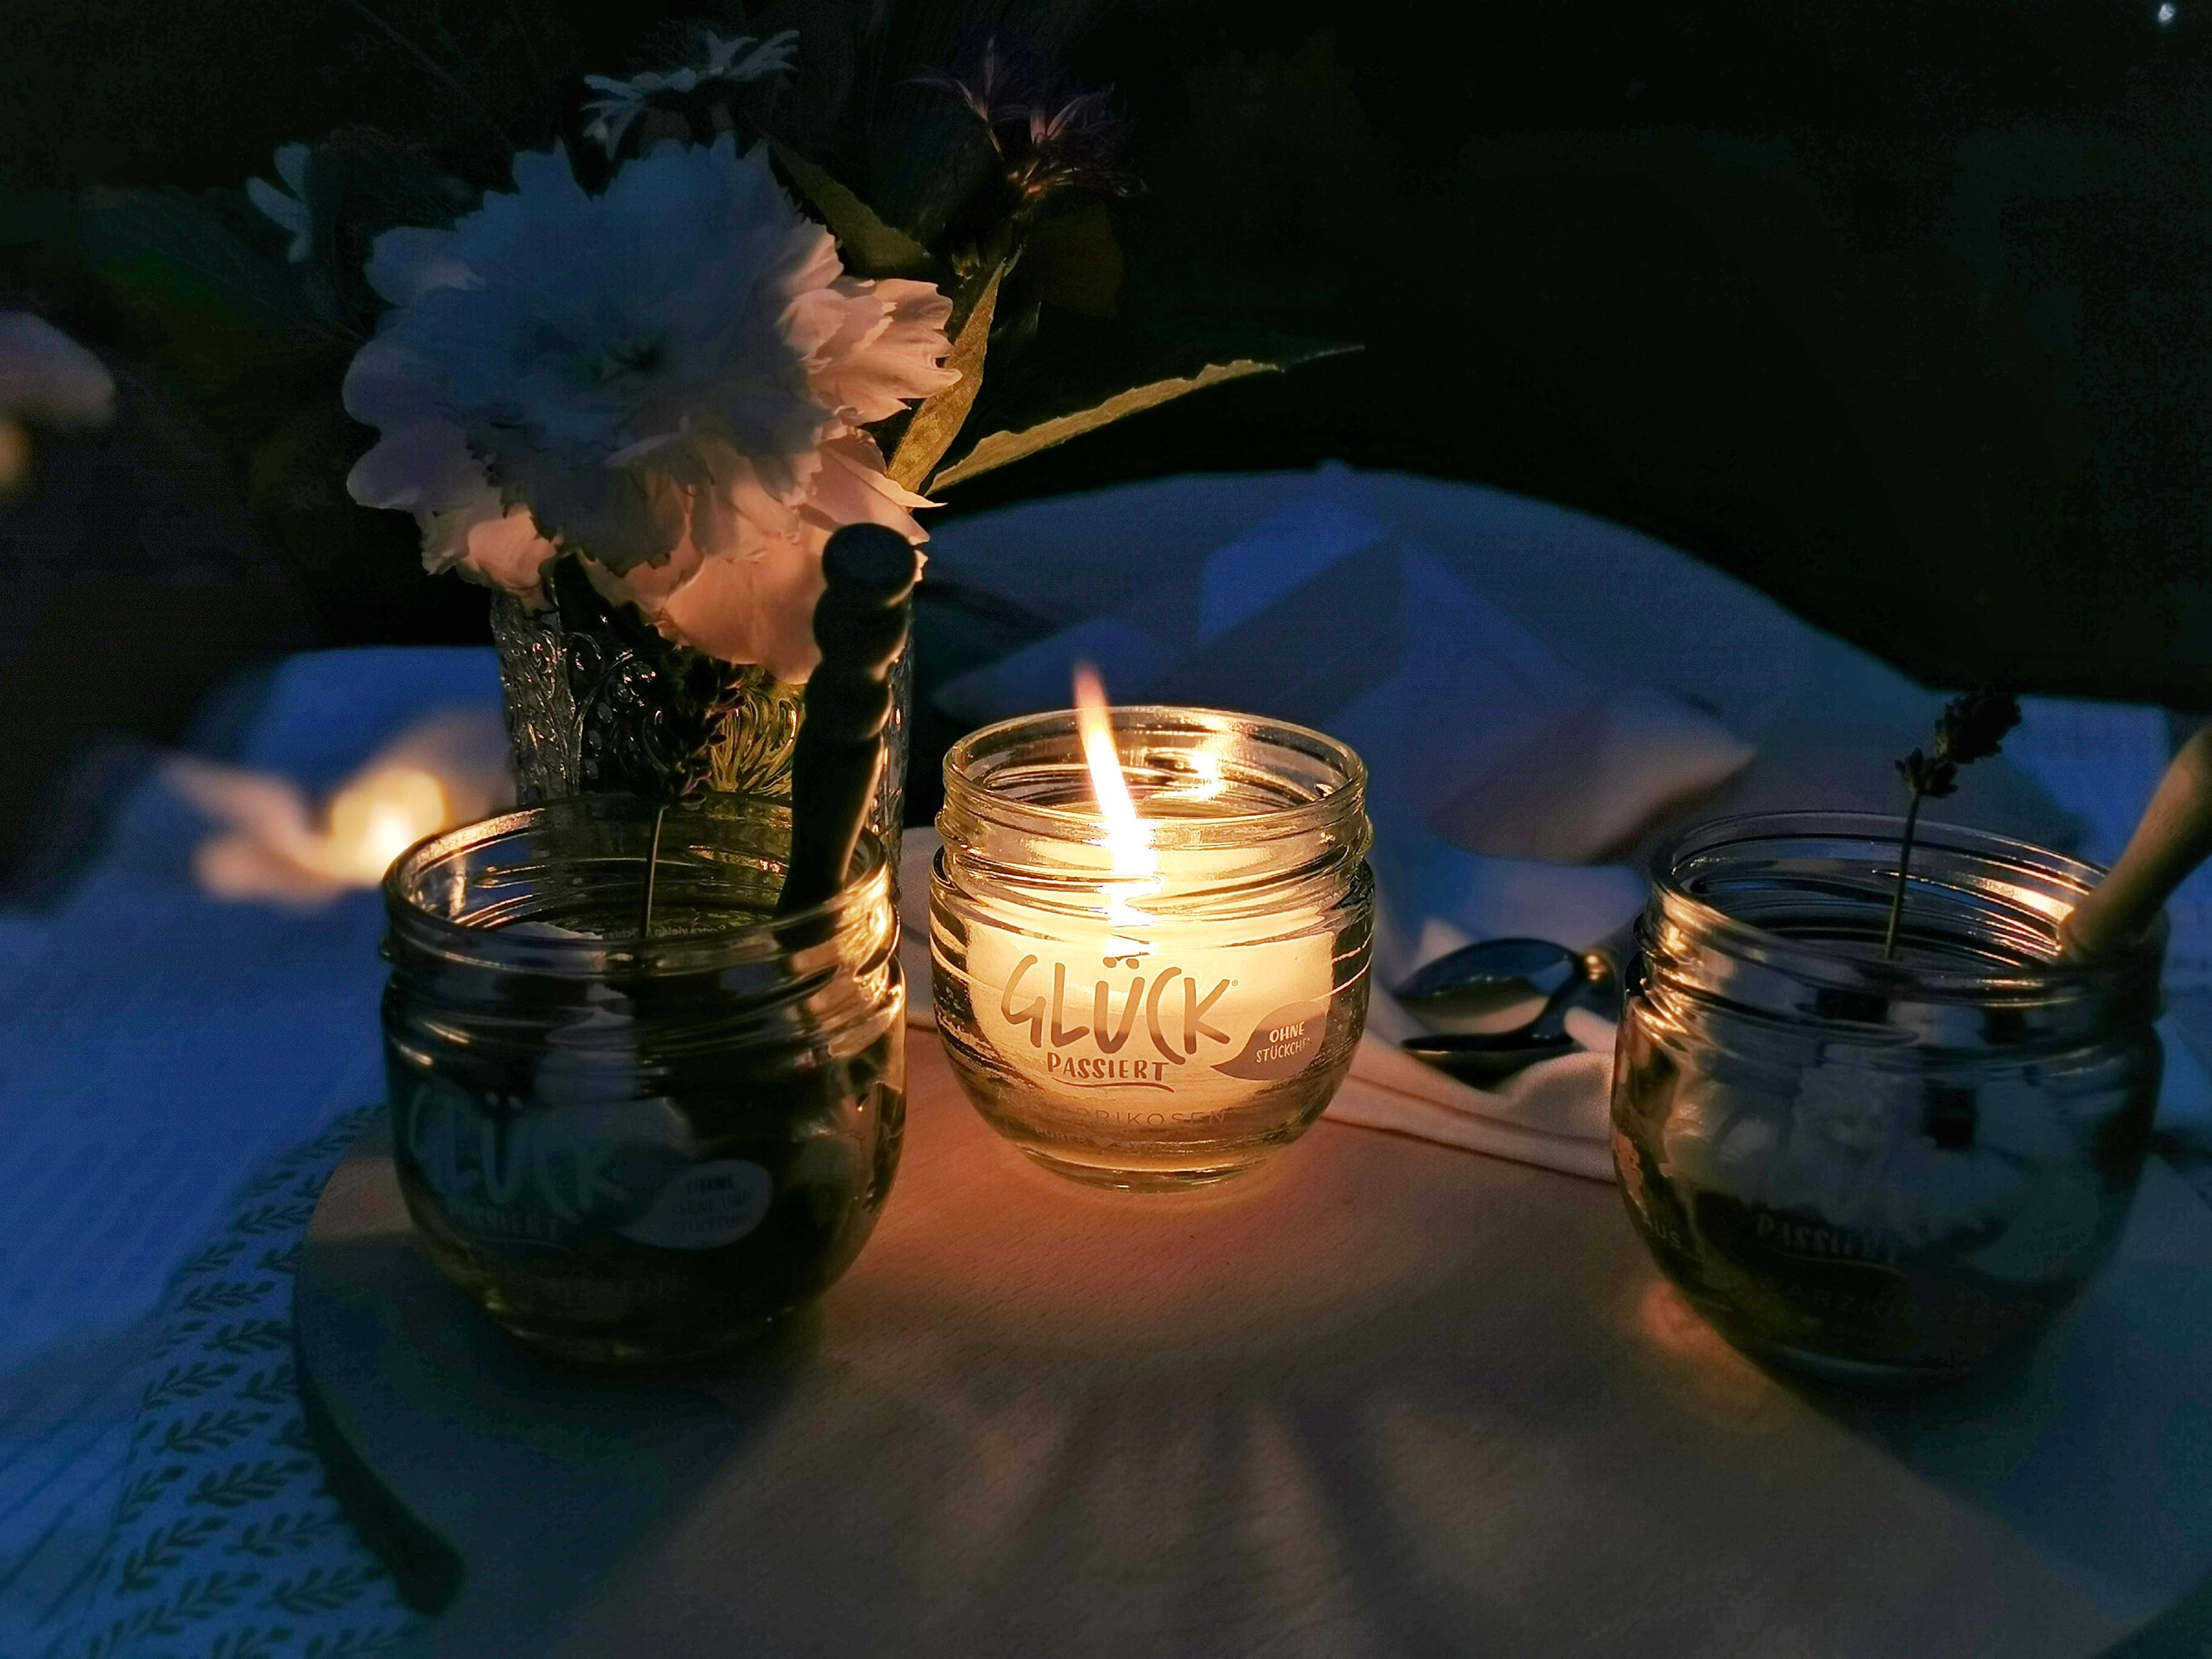 DIY-Kerzen aus Kerzenresten - Upcycling mit schönen Gläsern und praktisch für unterwegs | mammilade.com